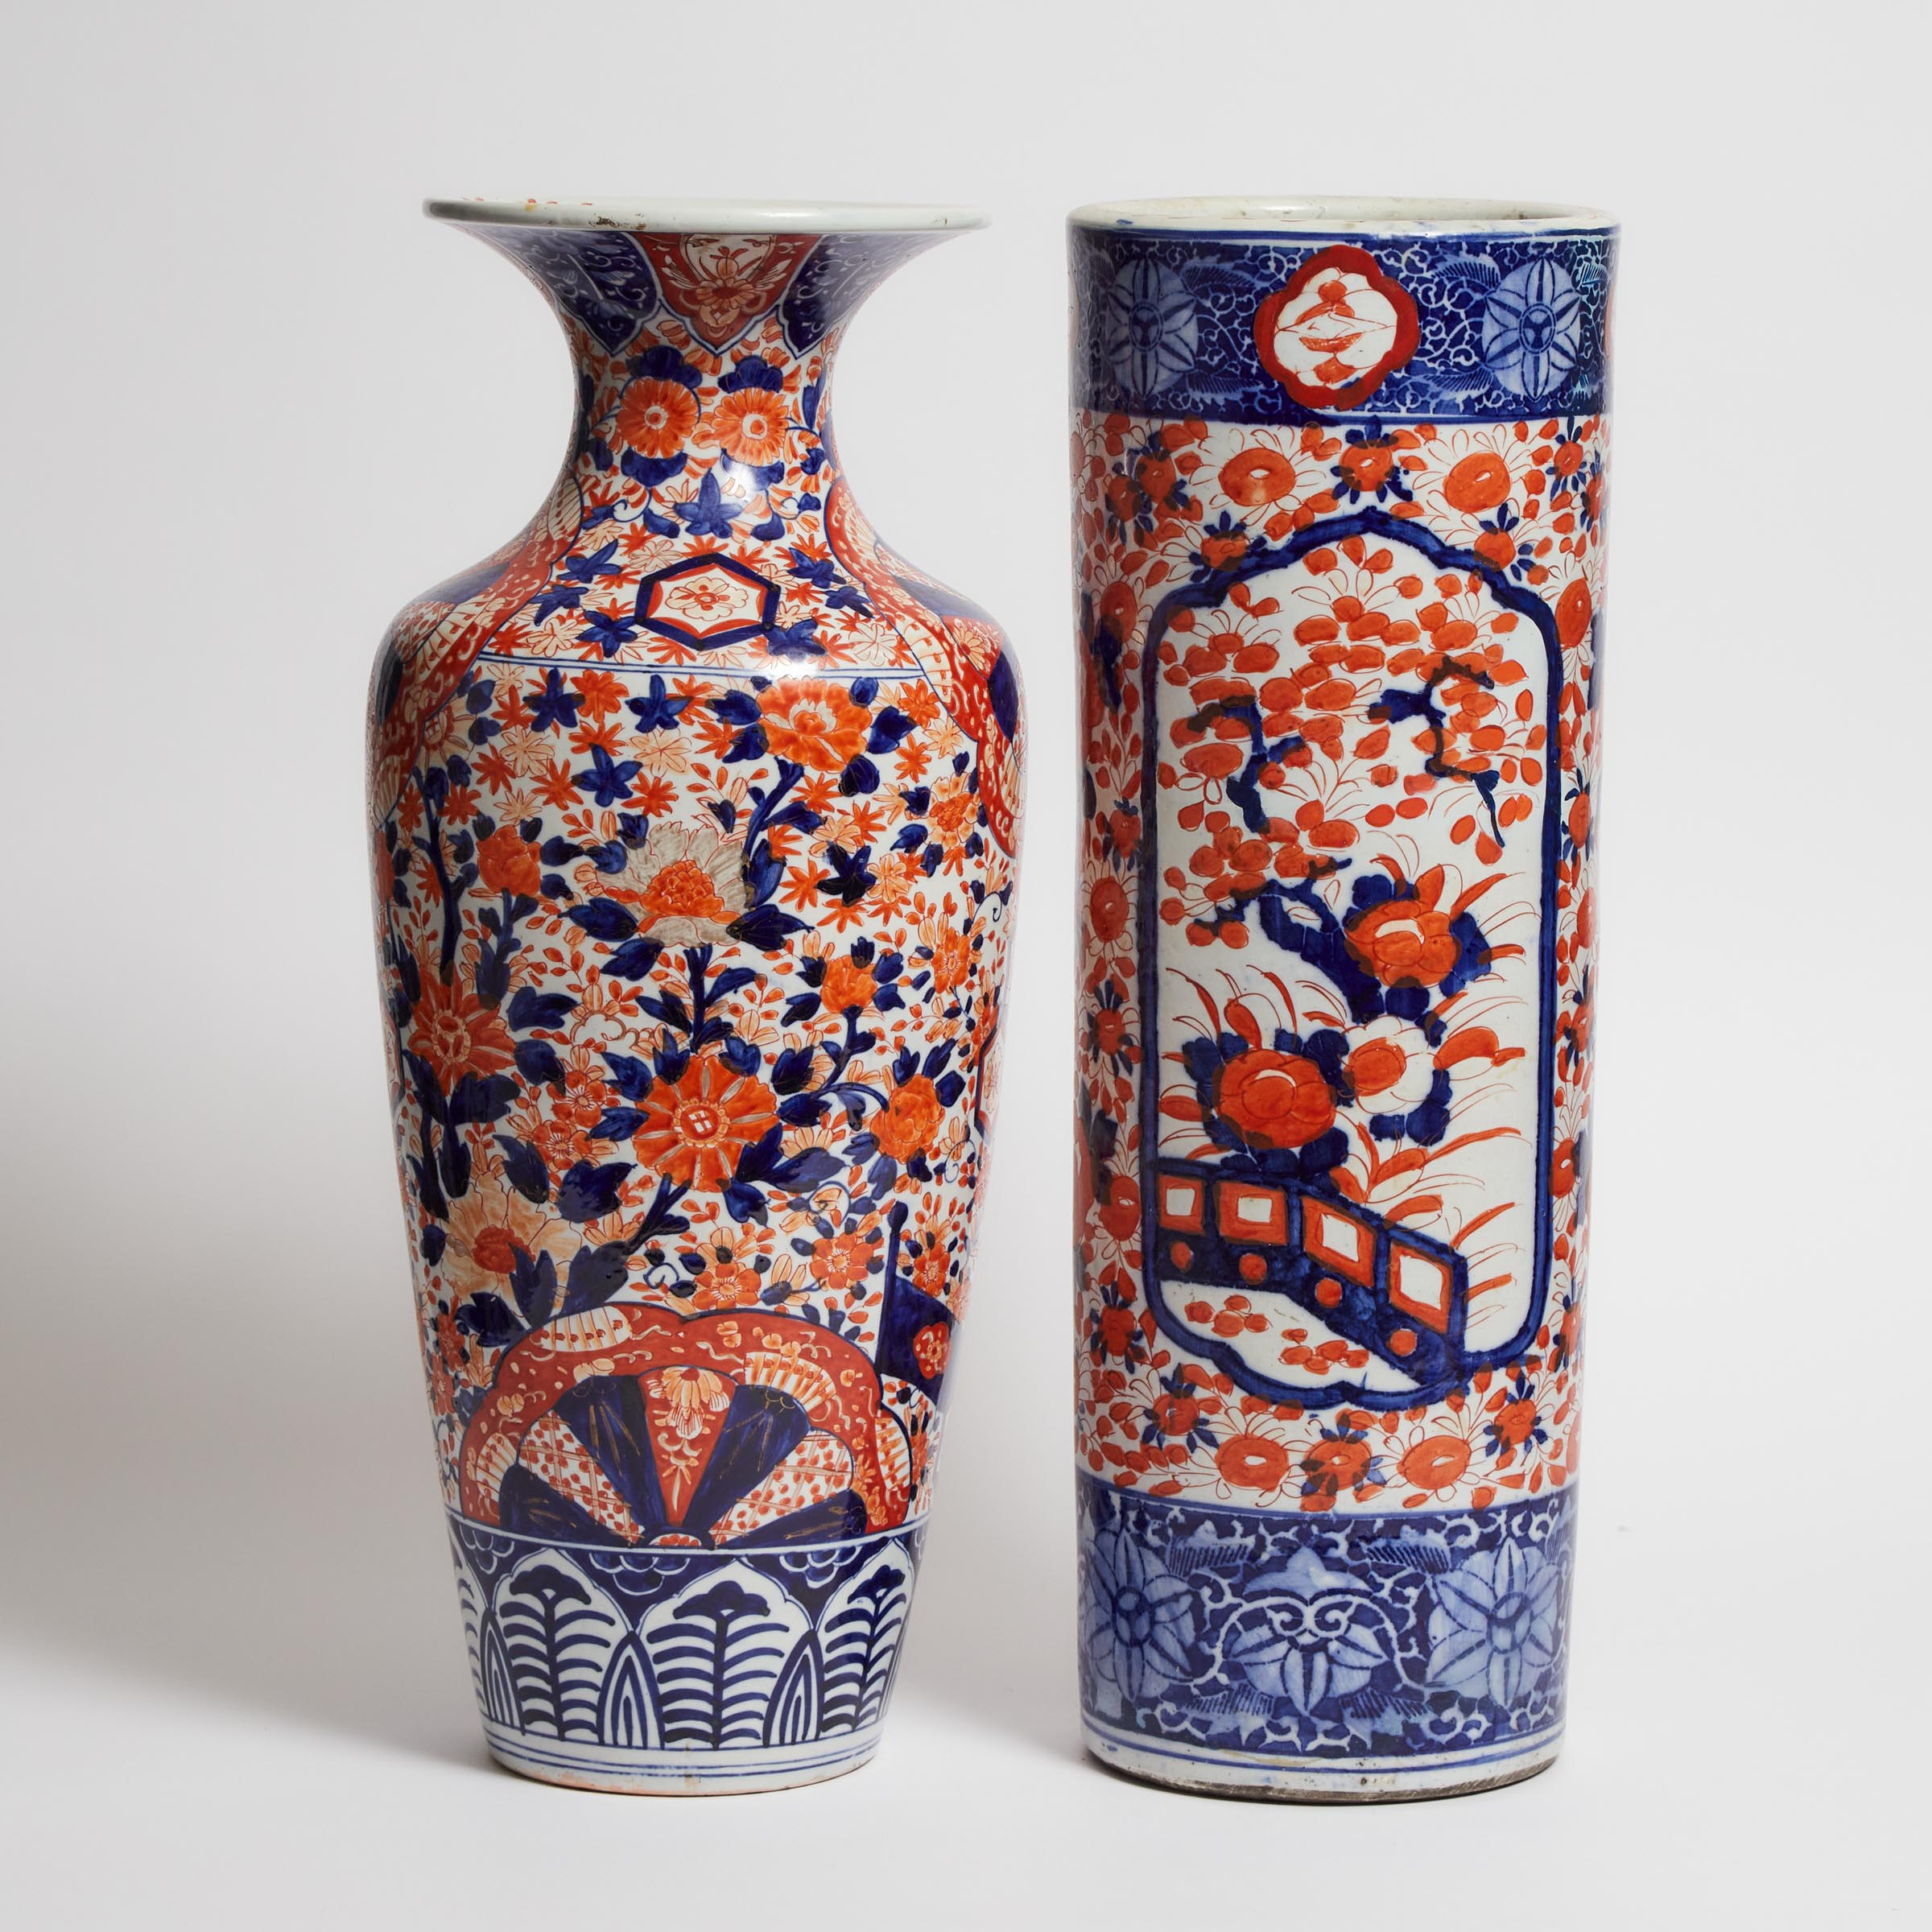 A Large Imari Porcelain Vase, Together